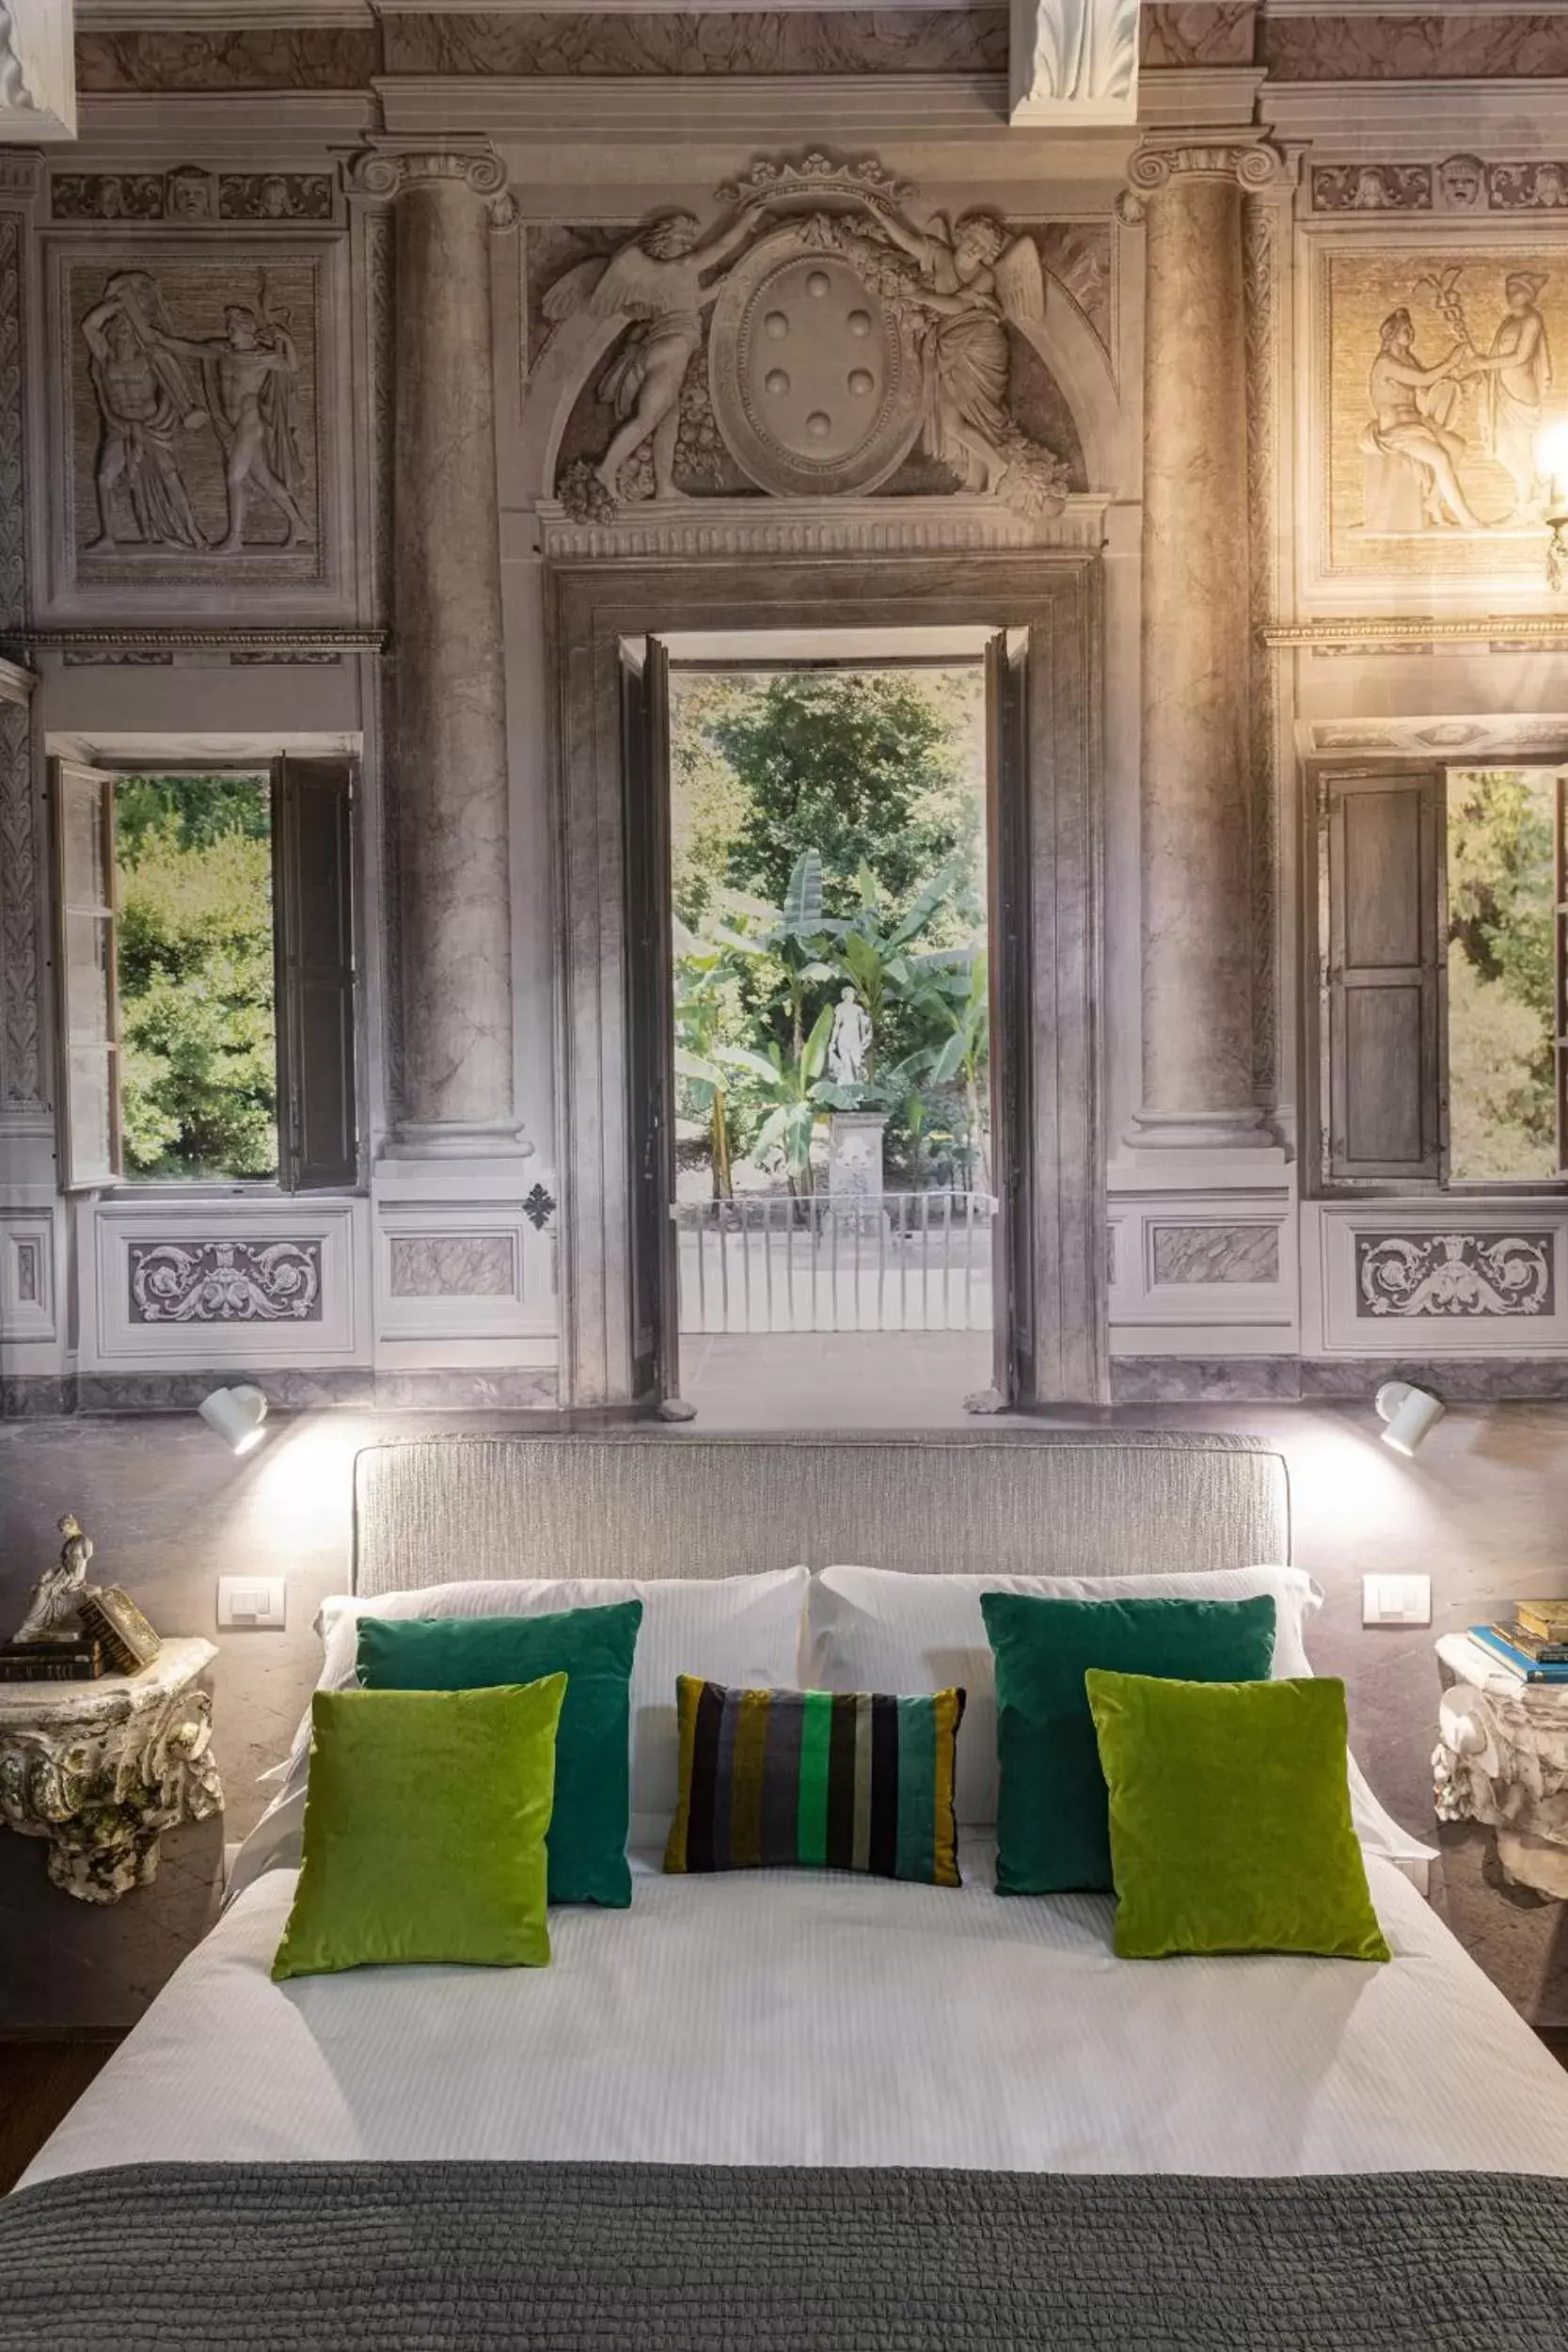 Bedroom in Casa Botticelli